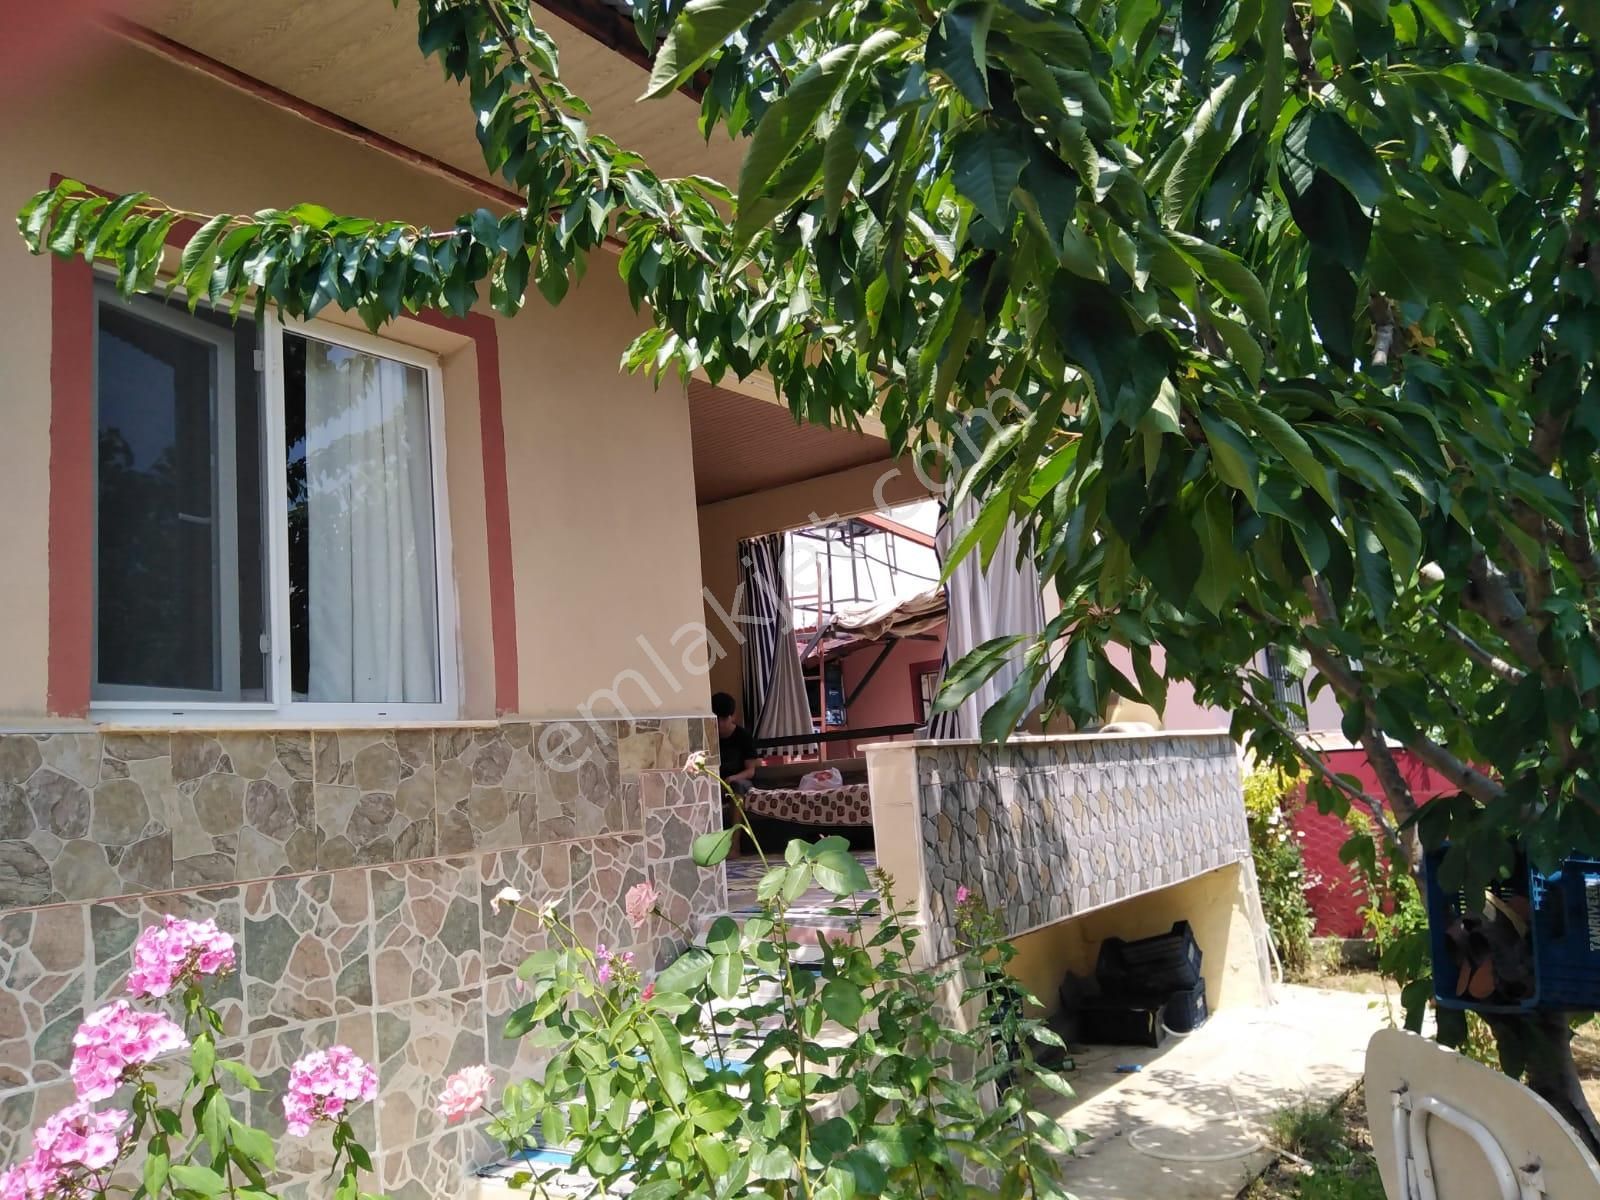 Erdemli Sarıkaya Satılık Köy Evi MERSİN ERDEMLİ SARIKAYA 2+1 ÇİFT DAİRE